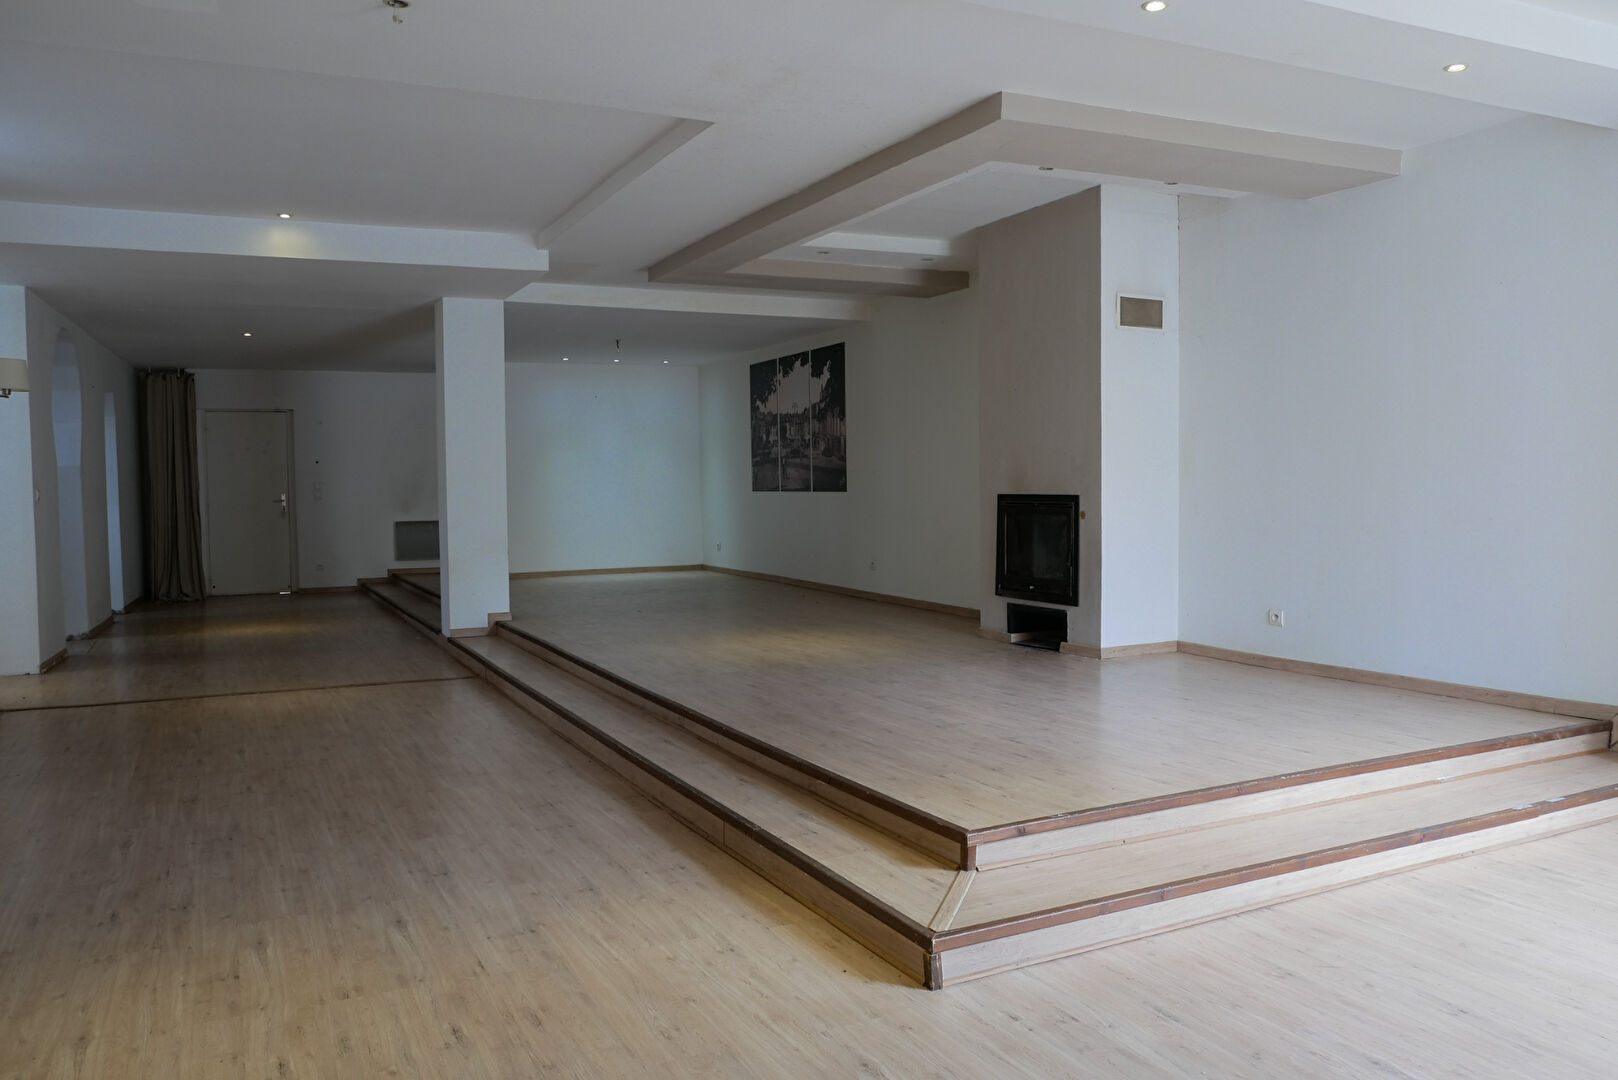 Vente Appartement 175 m² à Oloron Sainte Marie 128 000 €